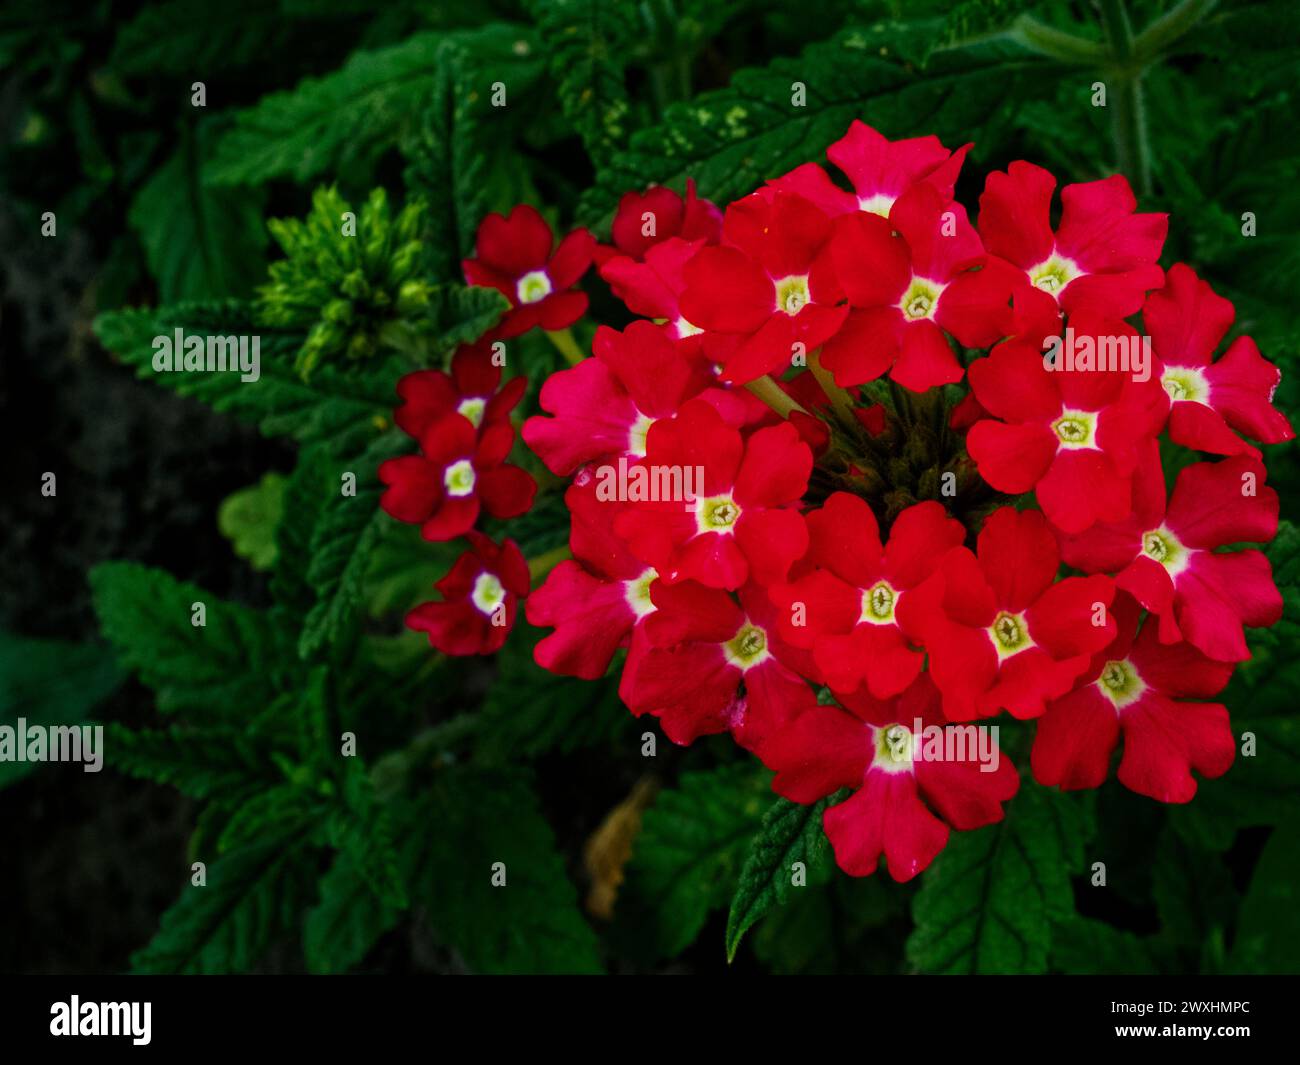 Ein Blumenstrauß aus leuchtend roten Blumen mit weißen sternförmigen Mittelpunkten vor tiefgrünem Hintergrund. Stockfoto